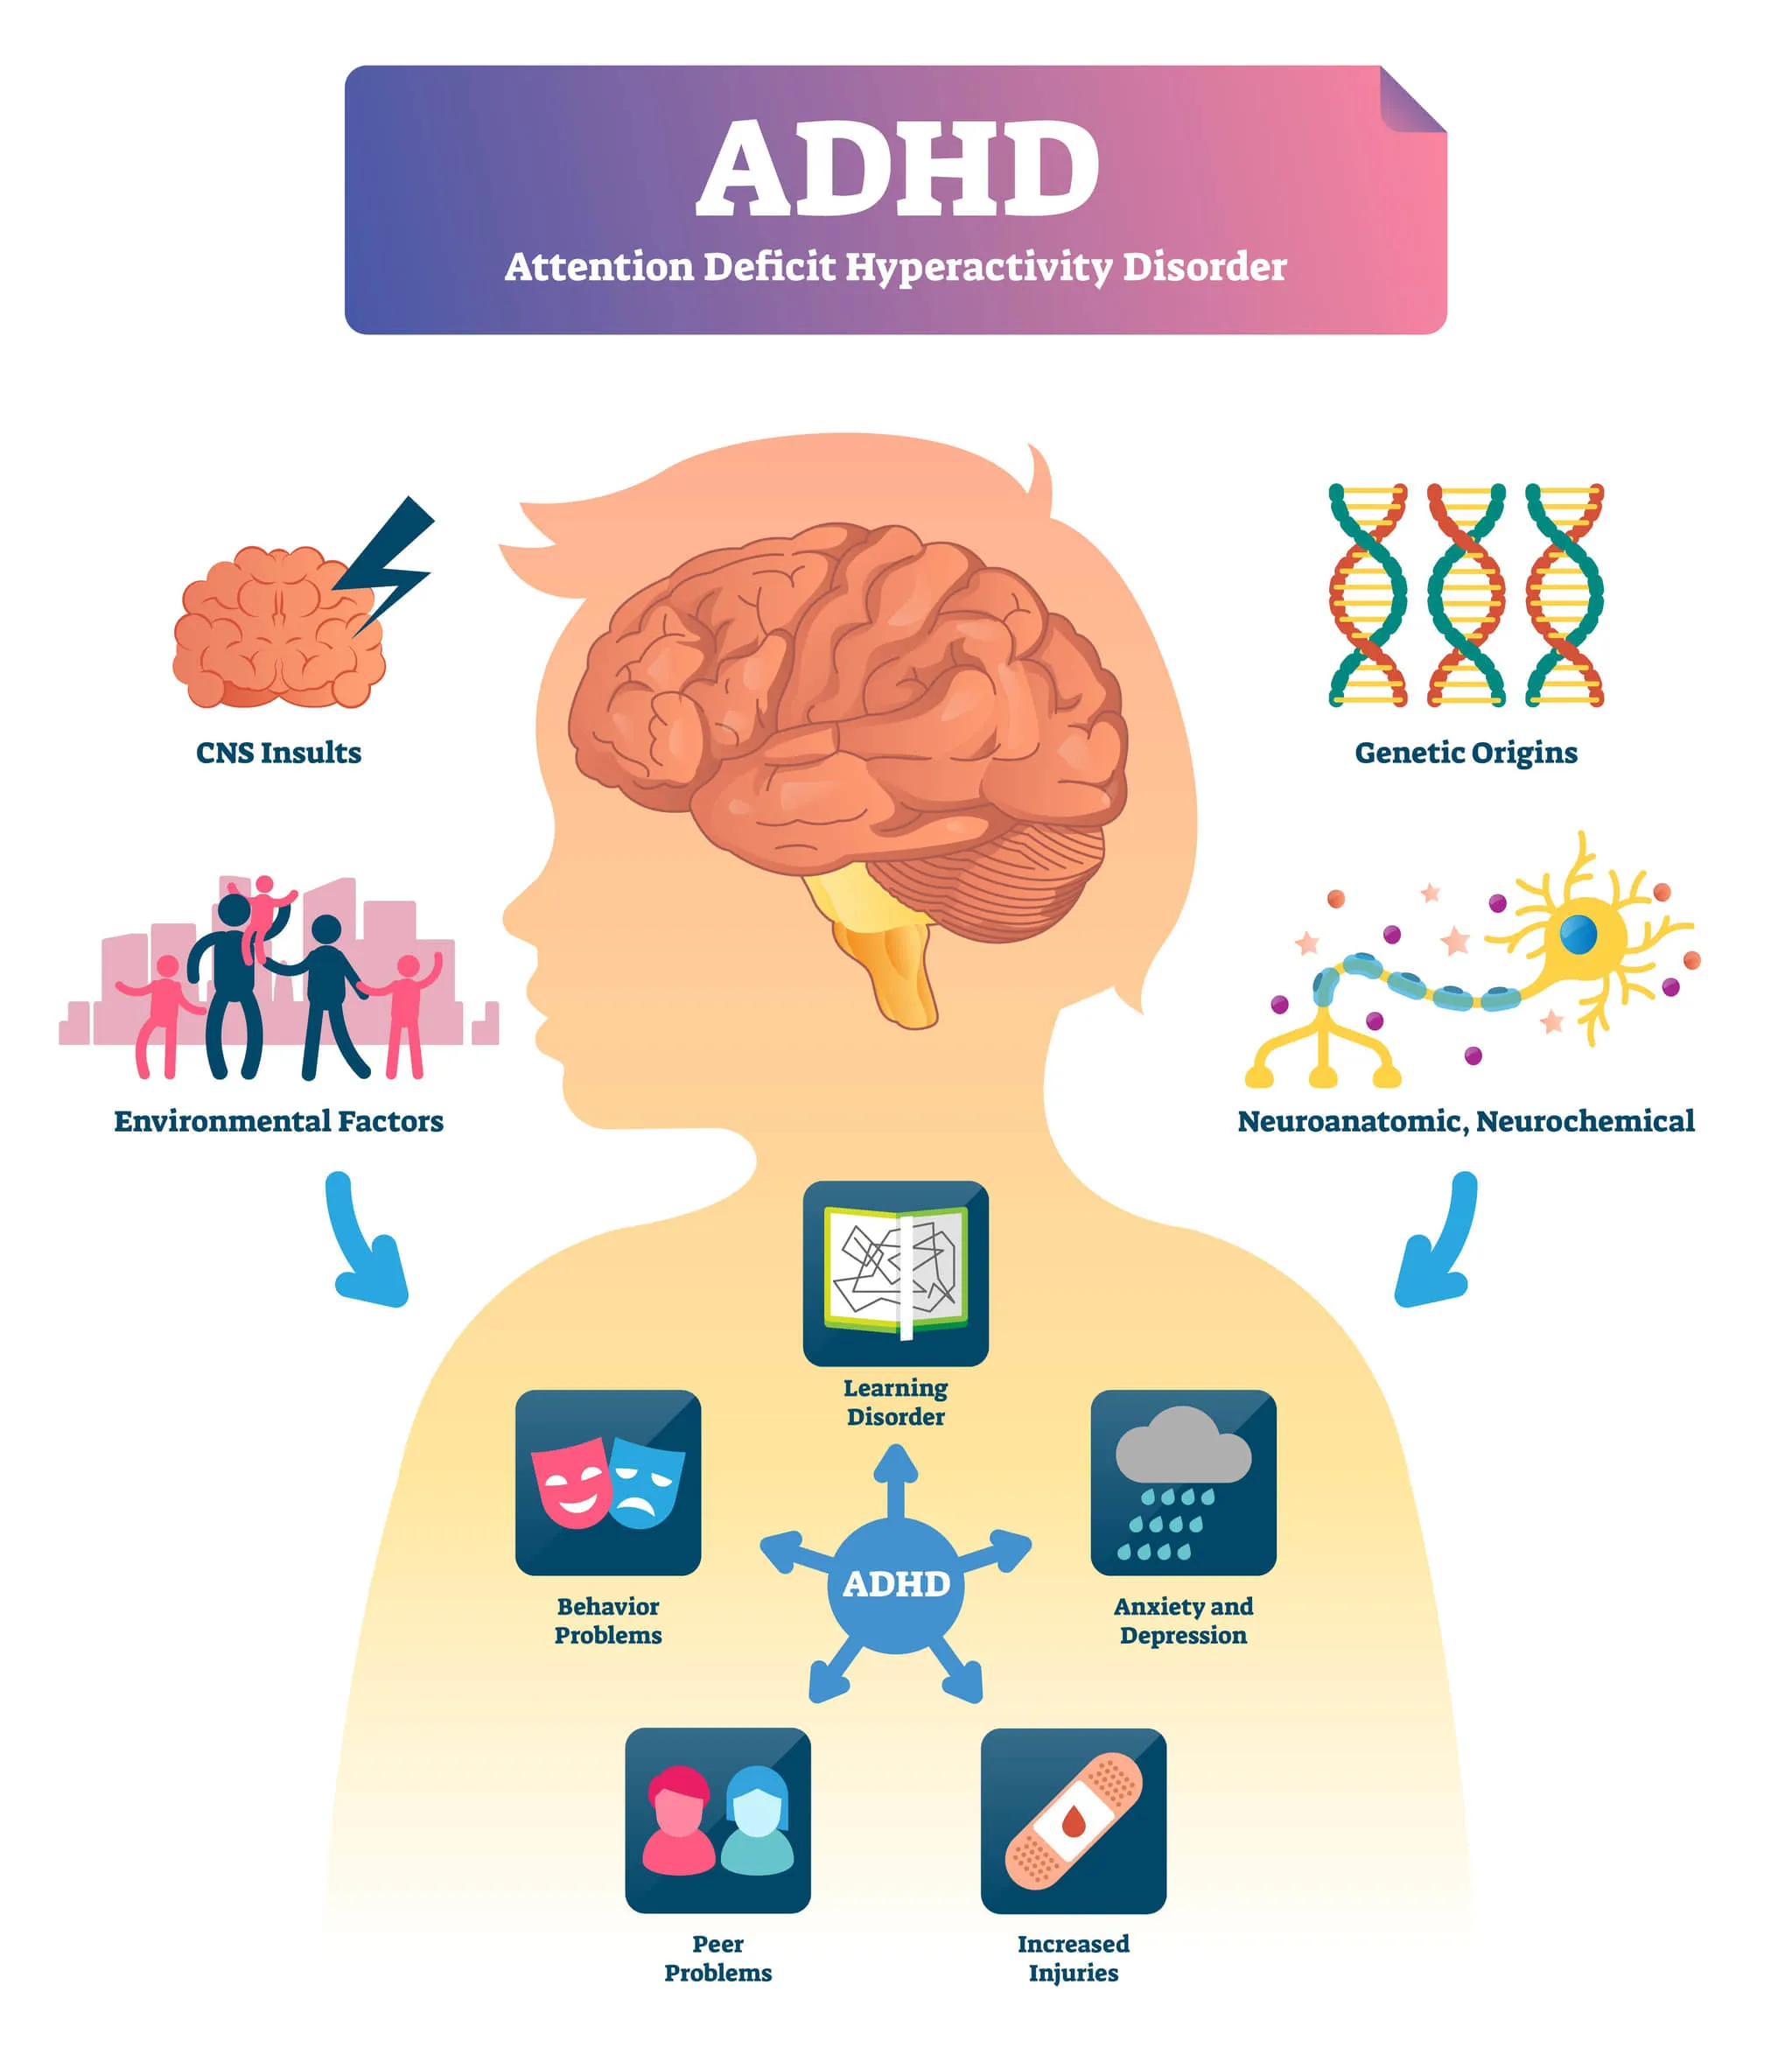 ADHDと遺伝のイメージイラスト